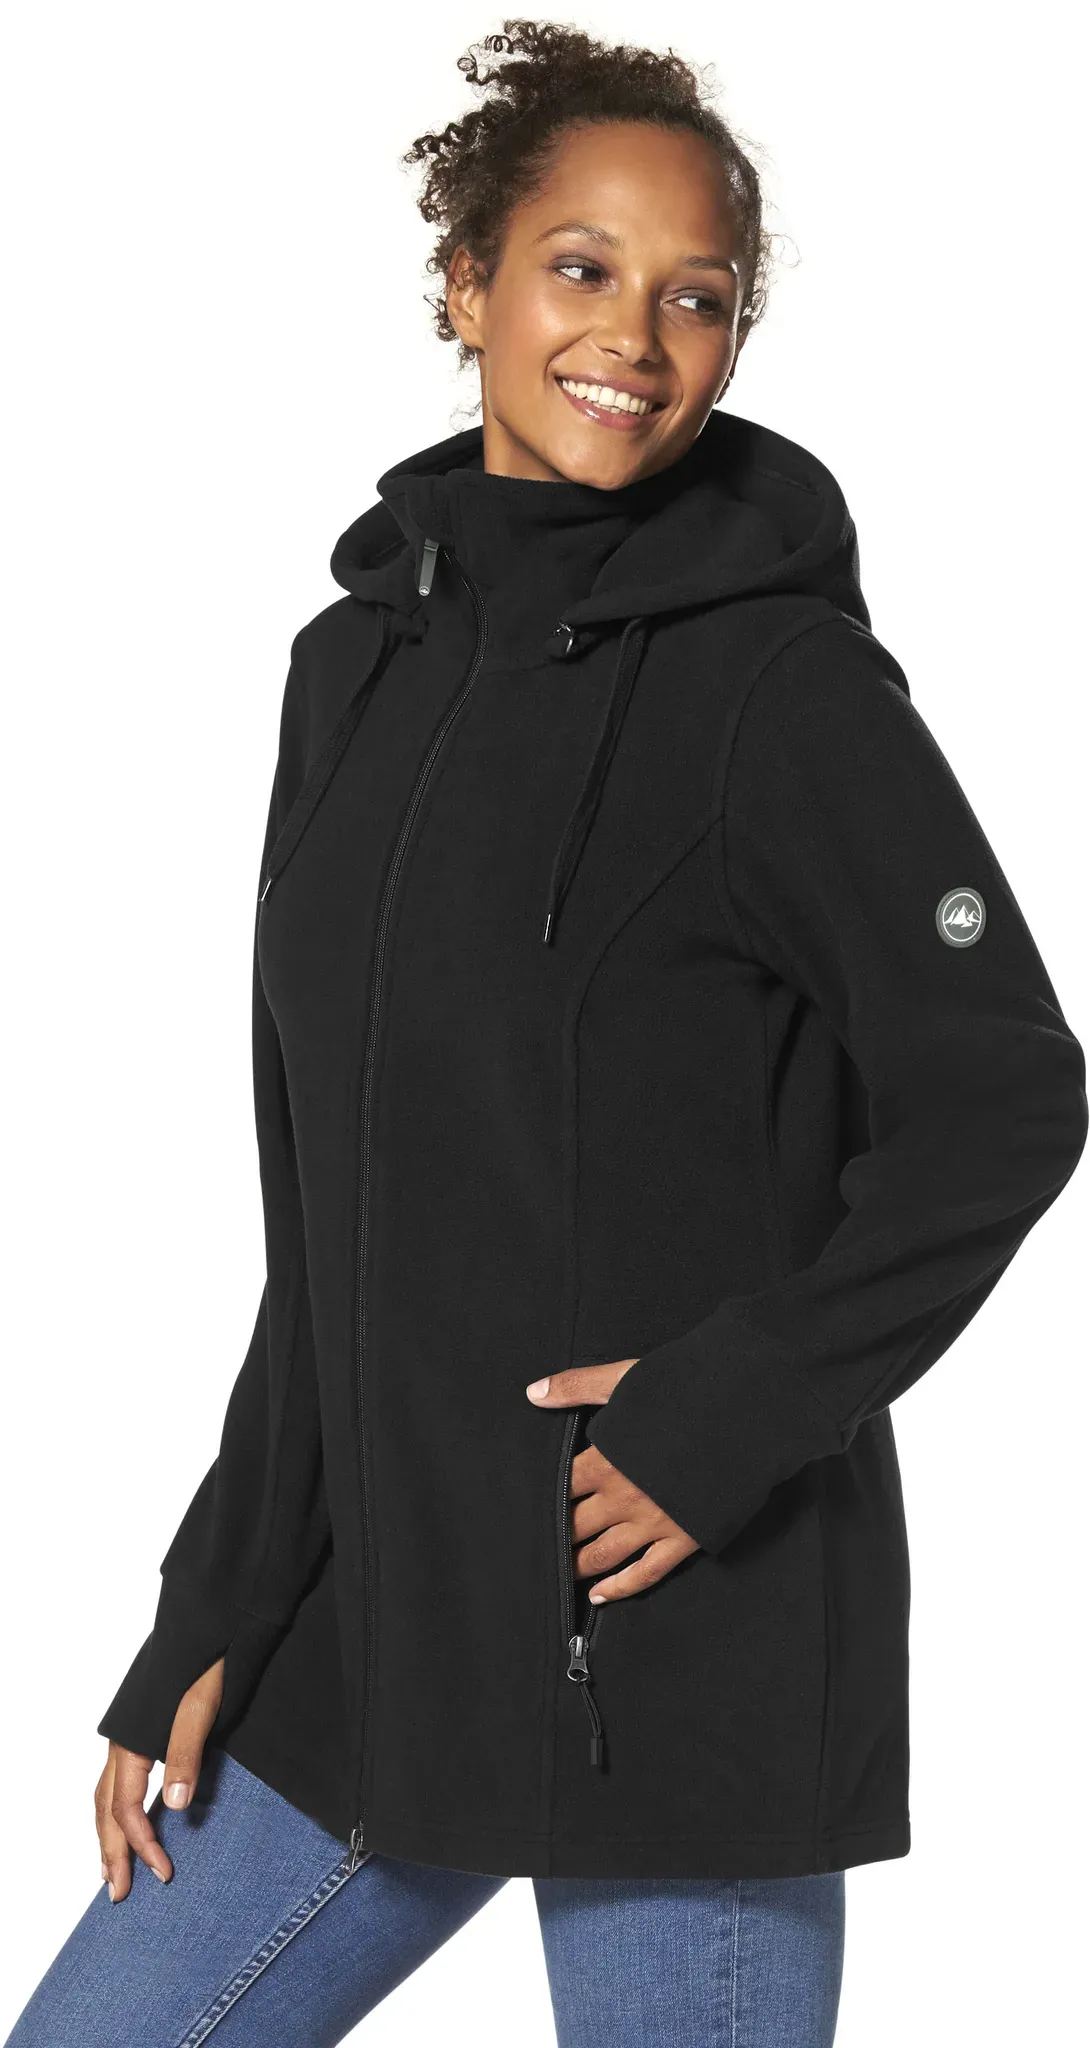 Fleecejacke POLARINO Gr. 46, schwarz Damen Jacken Sportjacken auch in Großen Größen erhältlich